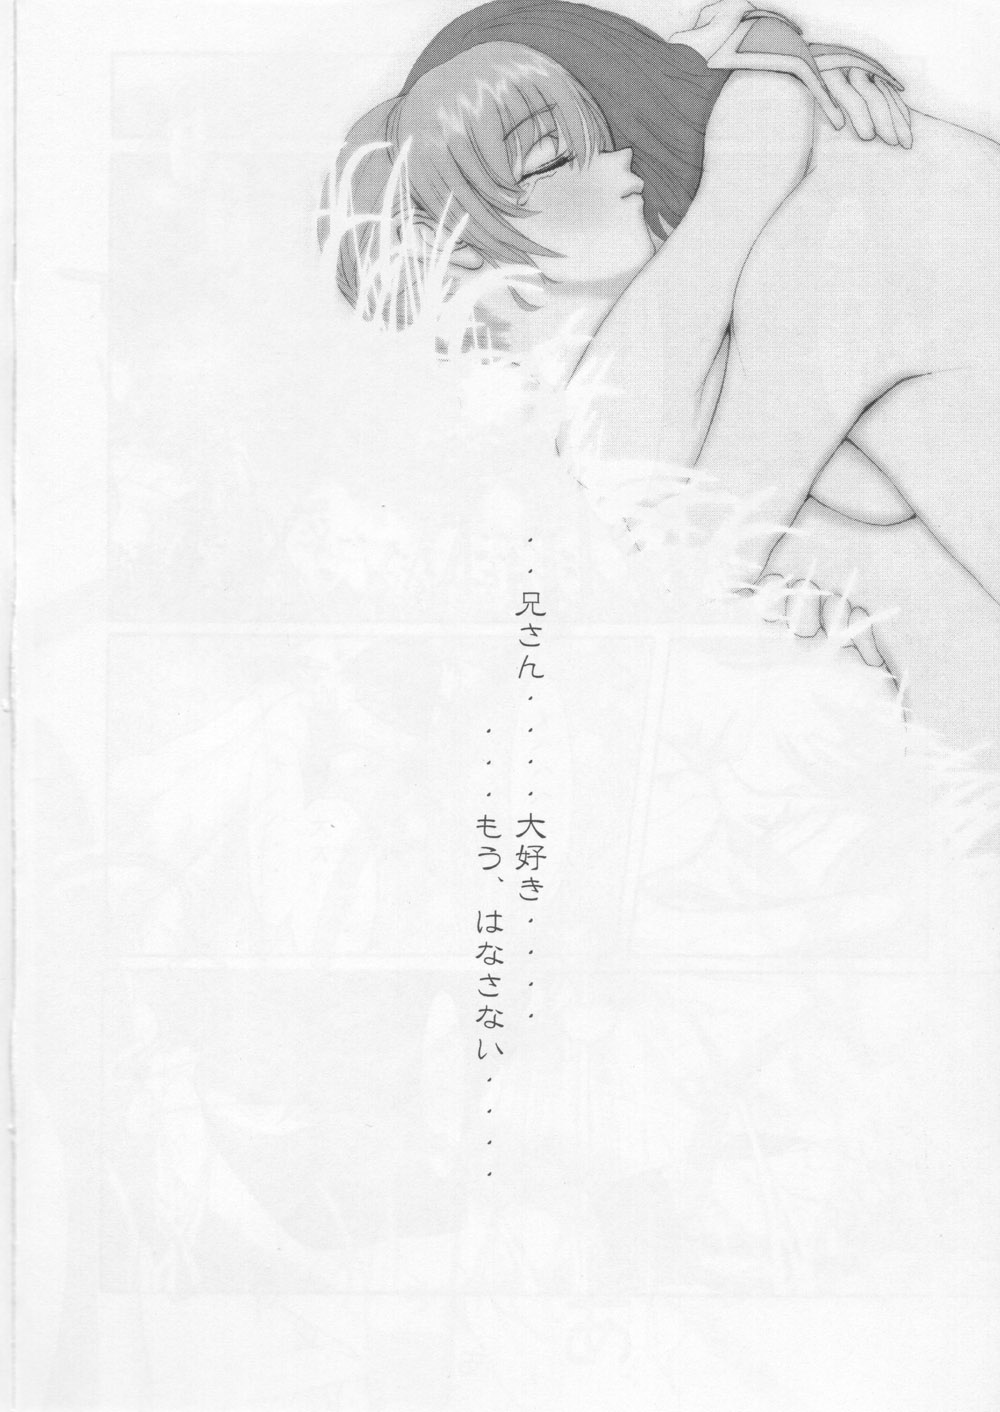 [RST Slave] Kasumi Love 2 (Dead or Alive) [RST Slave] かすみラヴ 2 (Dead or Alive)